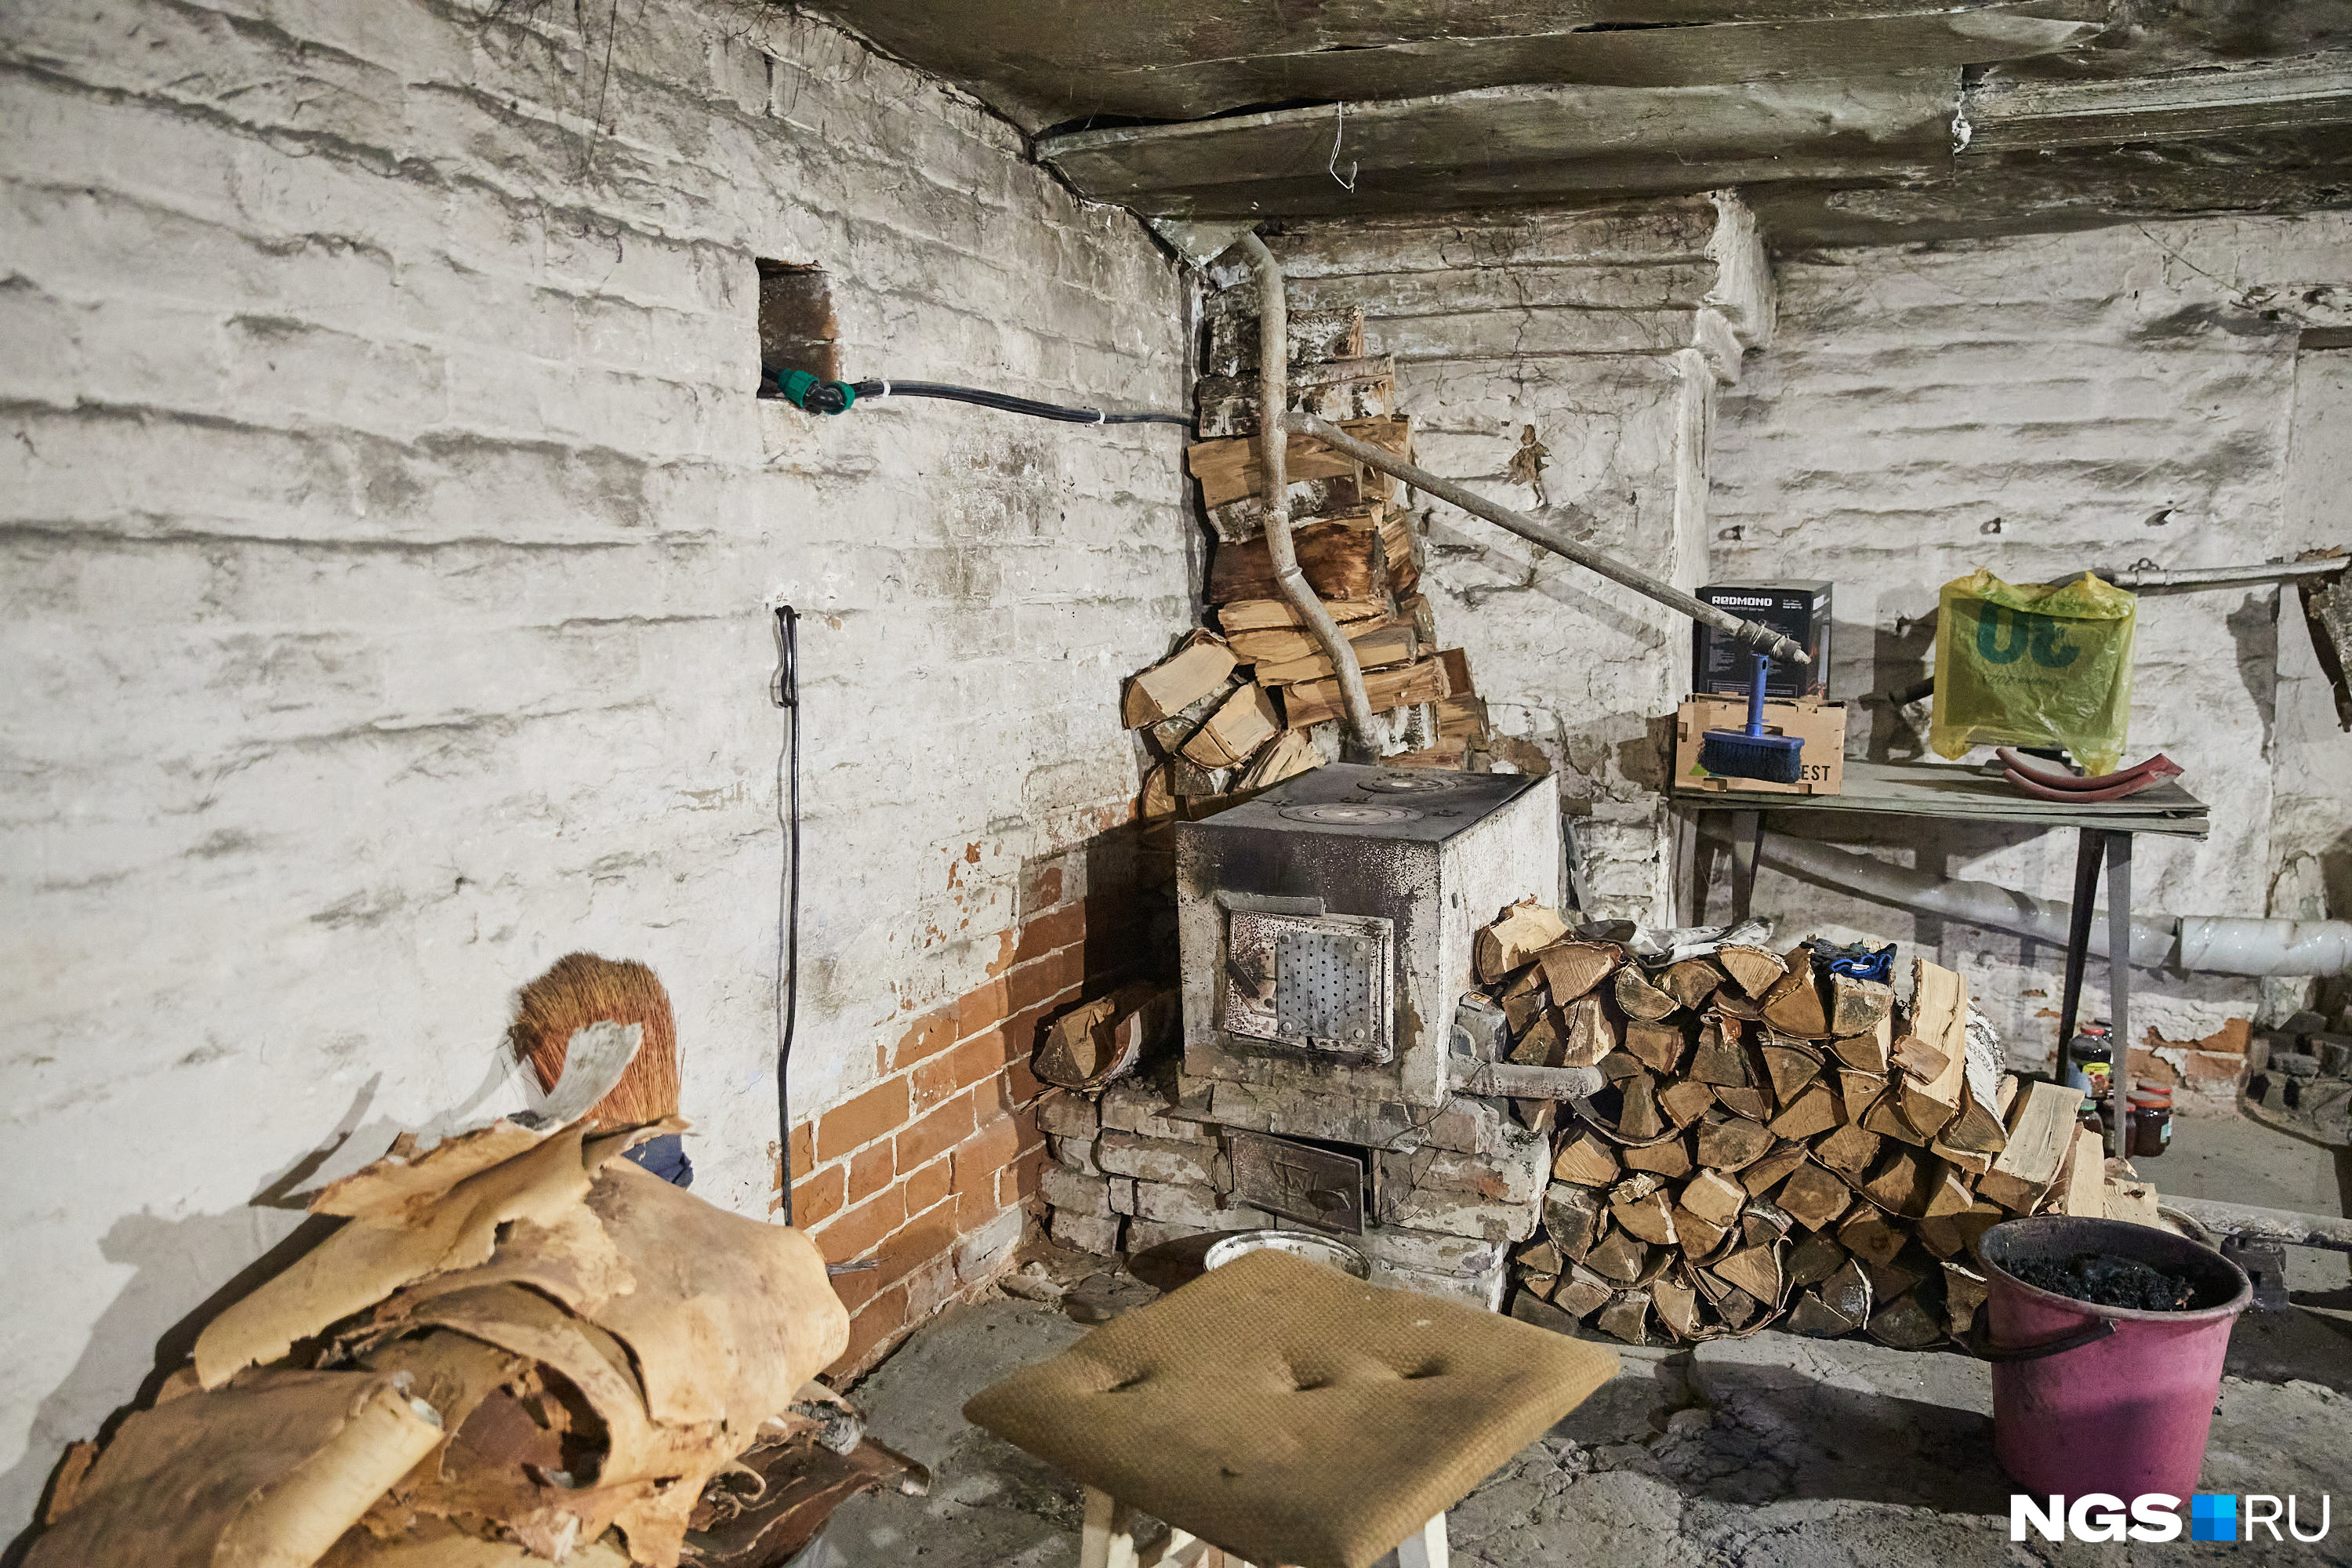 У семьи Еременко в подвале стоит печка, но эту площадь все равно учли в расчете оплаты капитального ремонта